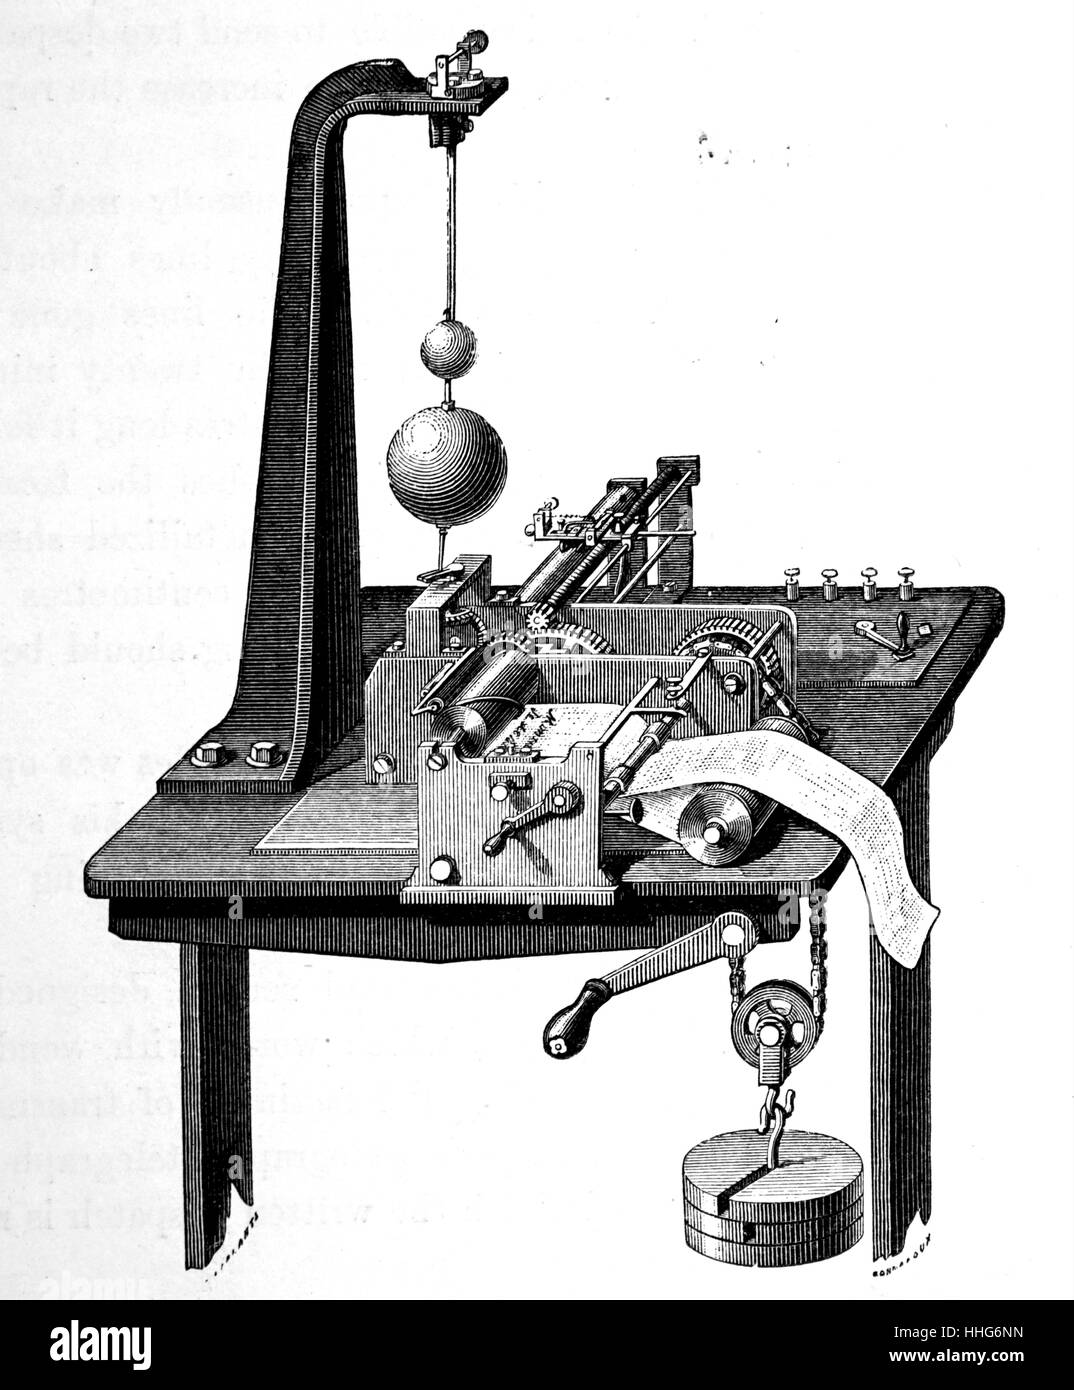 Meyer's telegraph autographic. L'image d'être envoyé a été écrit sur du papier métallisé avec encre isolante et placés autour d'un cylindre métallique. Un stylet métallique déplacé sur l'envoi d'un côté à l'autre ; et que des contacts ont été pris et brisée par les impulsions d'encre ; ont été envoyés à la station de réception où un deuxième stylet reproduit l'image sur papier imprégné de cyanure de potassium Ferro. 1874. Banque D'Images